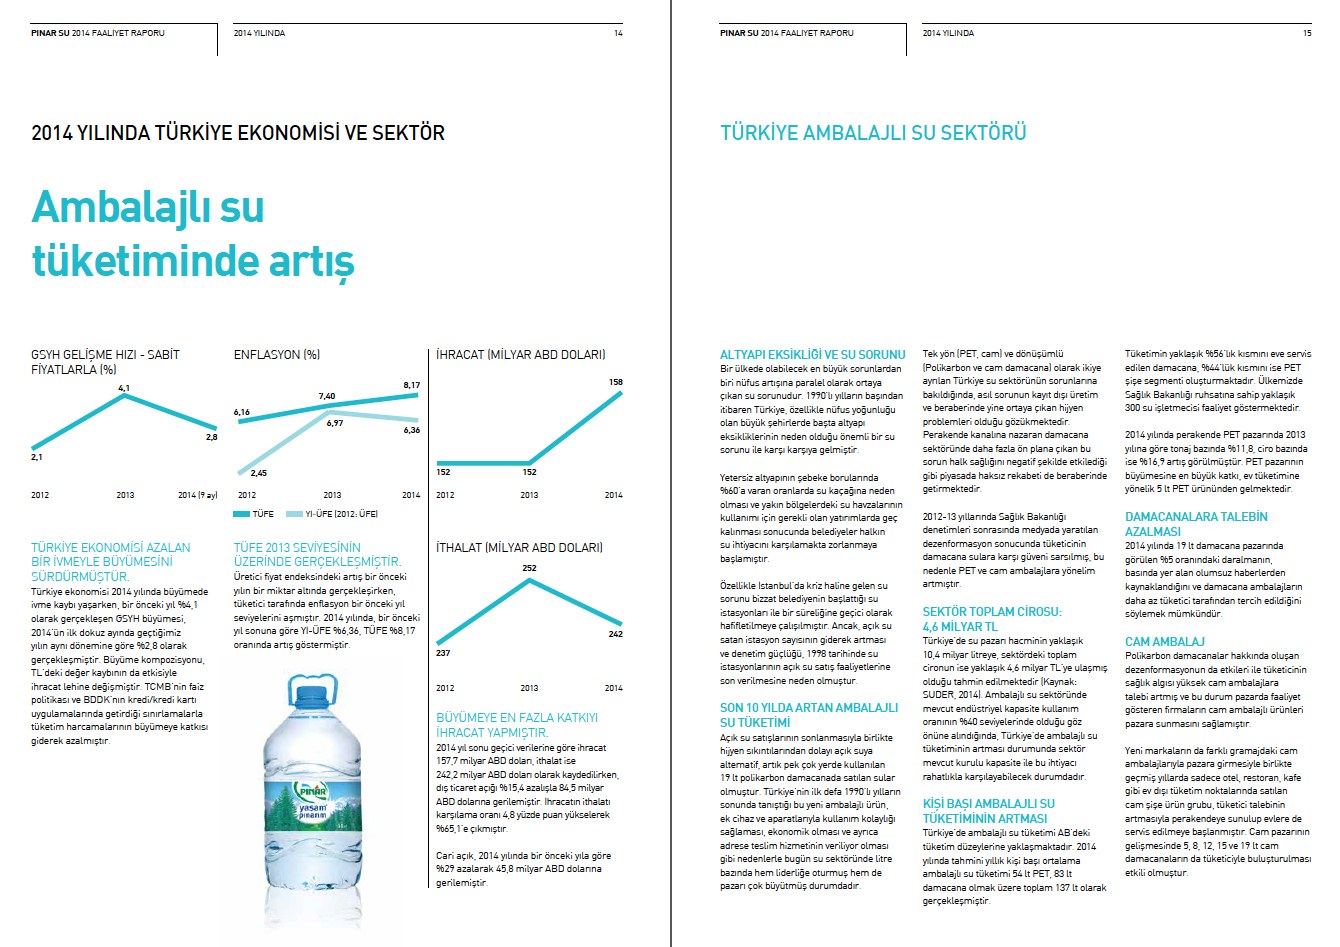 PINAR SU / 2014 Faaliyet Raporu / 2014 Annual Report